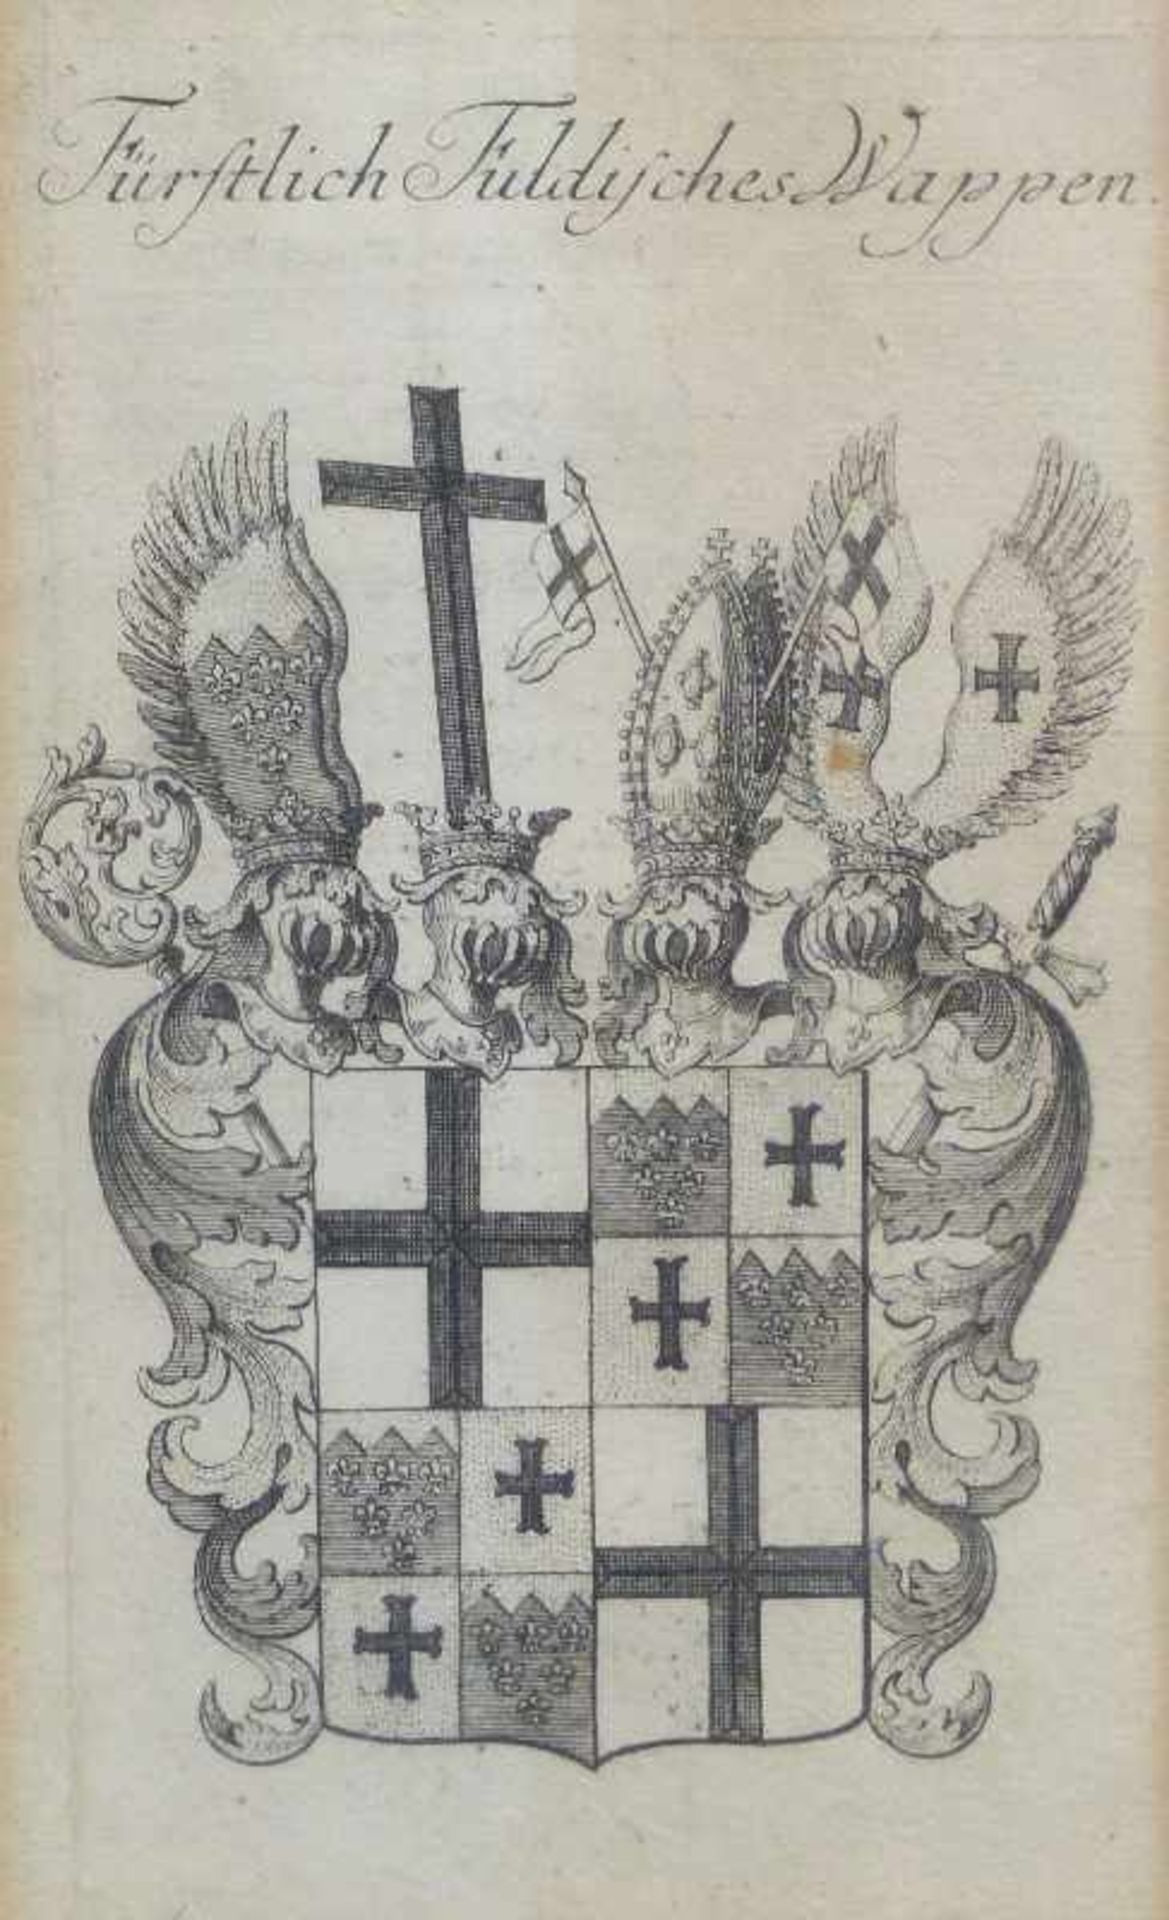 Kupferstich "Fürstlich Fuldisches Wappen" Johann D. Köhler, aus Wappenkalender v. Chr. Weigel,